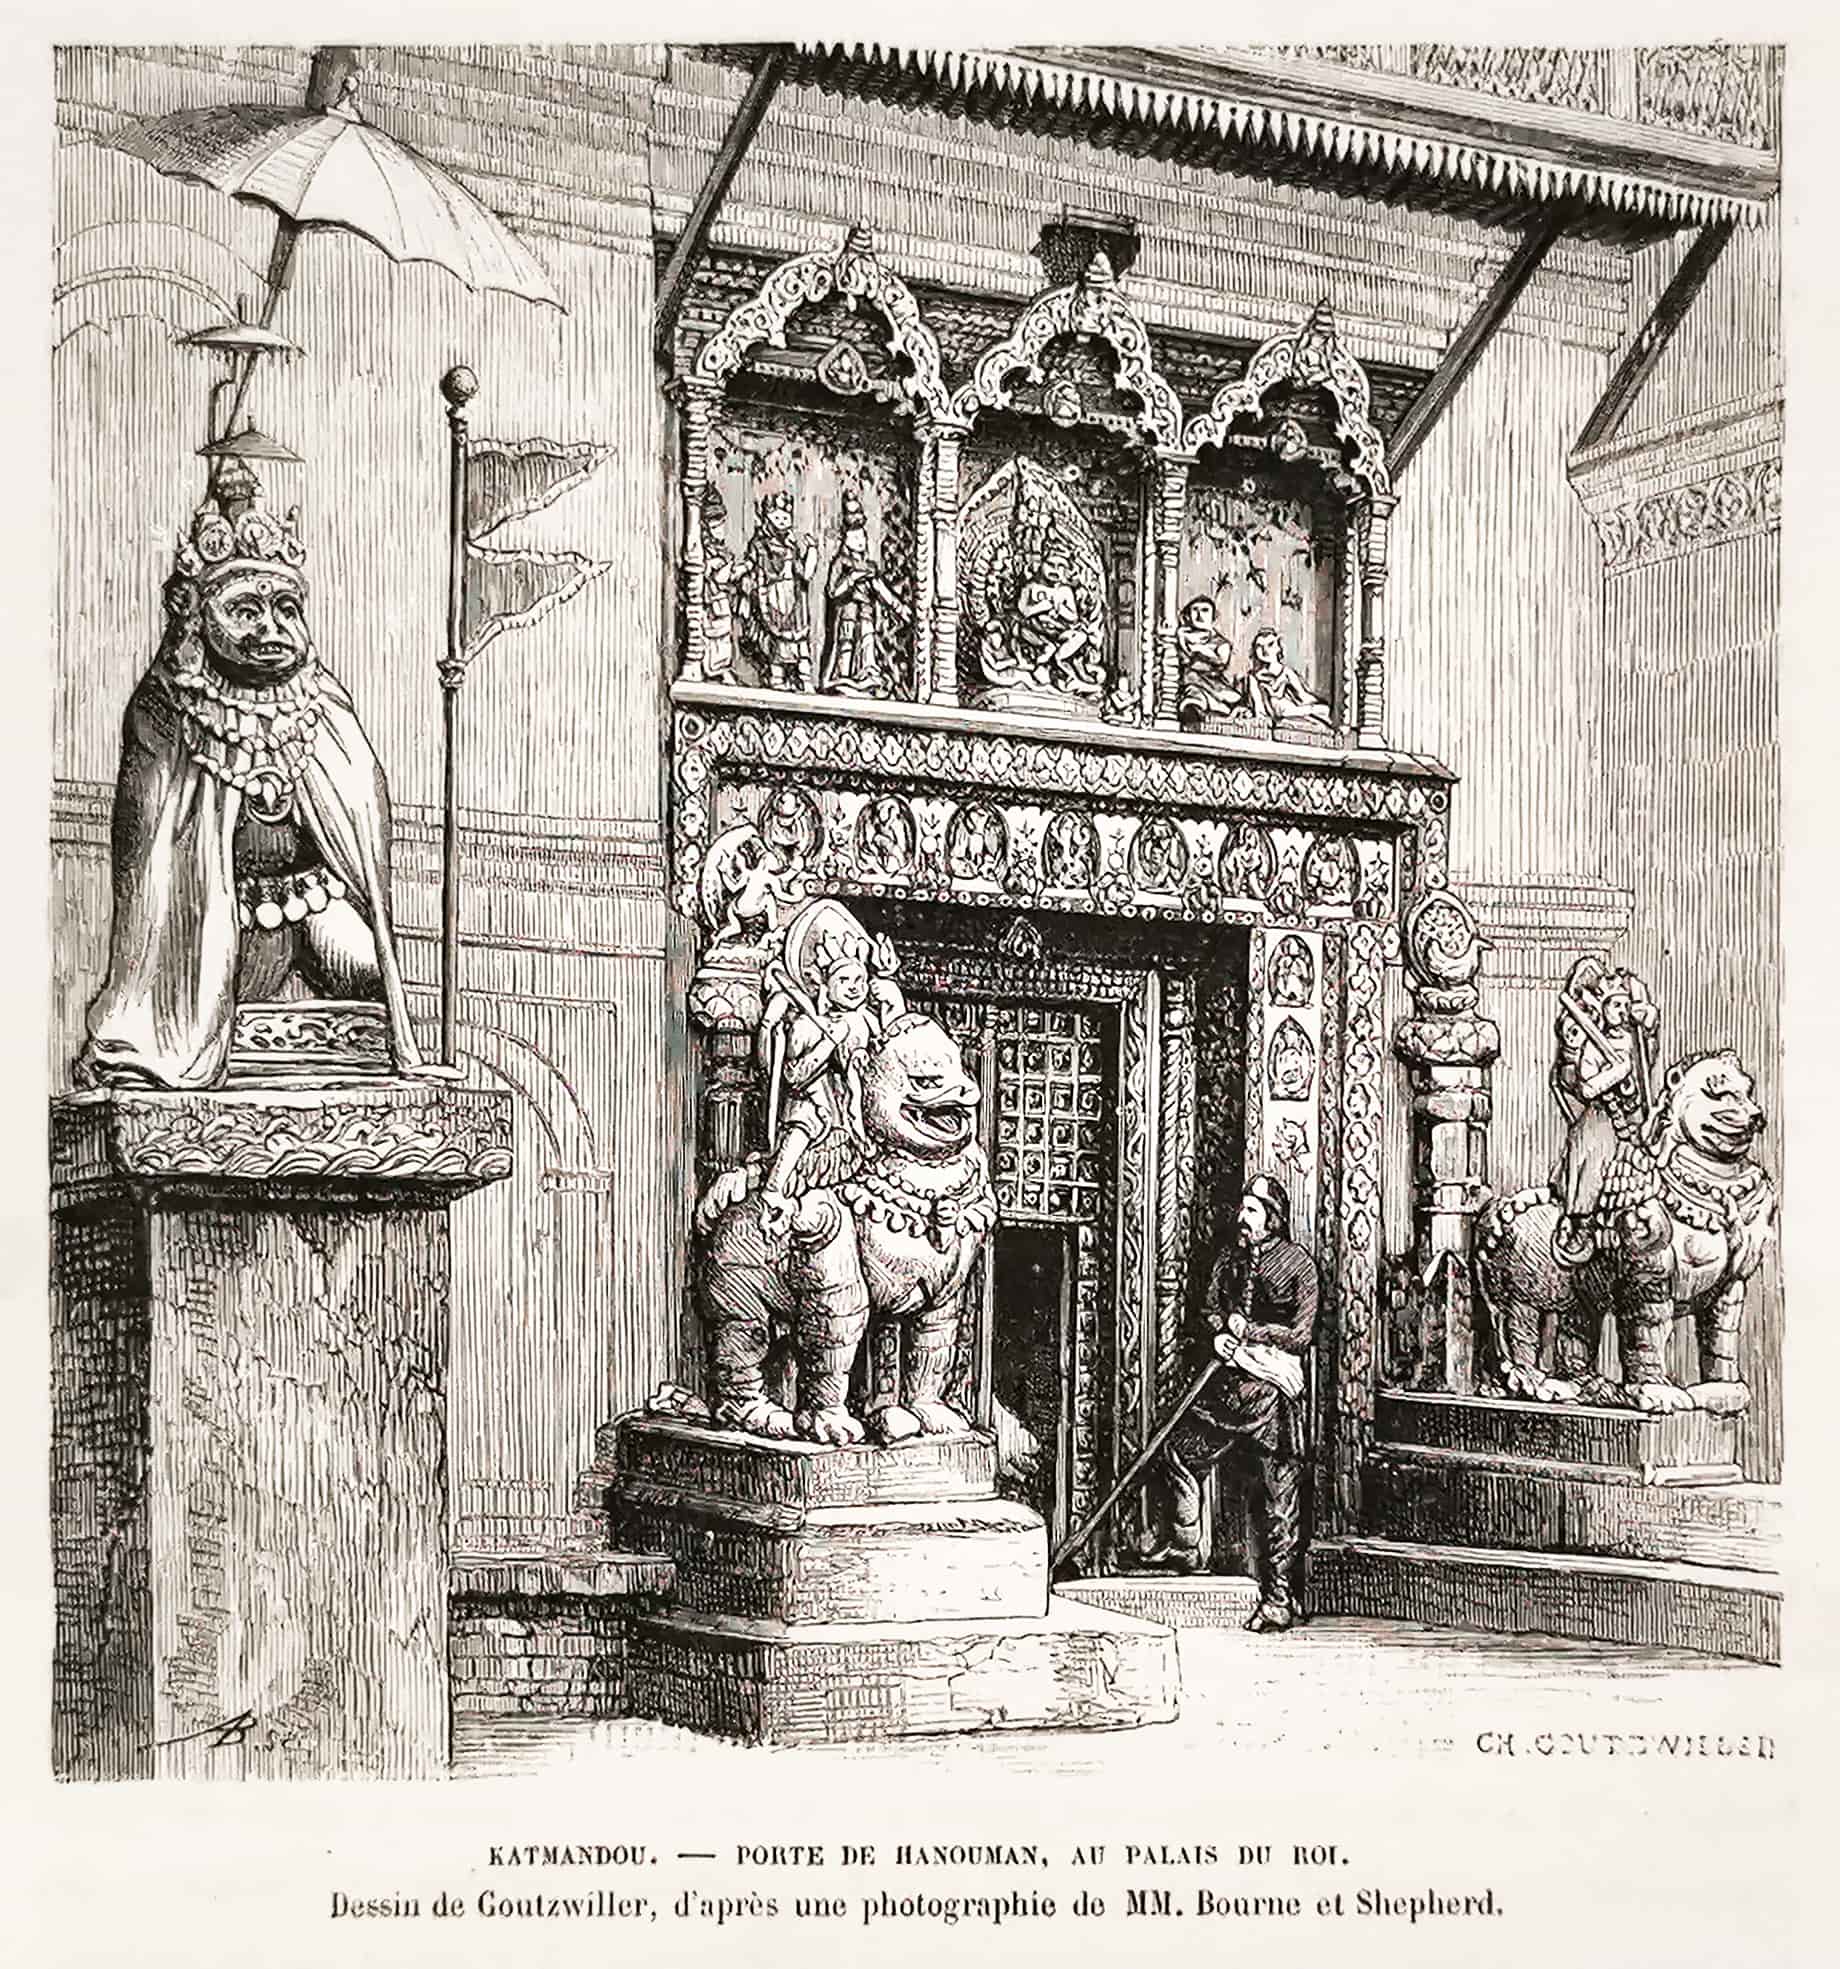 Katmandou. - Porte de Hanouman, au palais du roi. Dessin de Goutzwiller, d'apres une photographie de MM. Bourne et Shepherd. - Antique Print from 1876